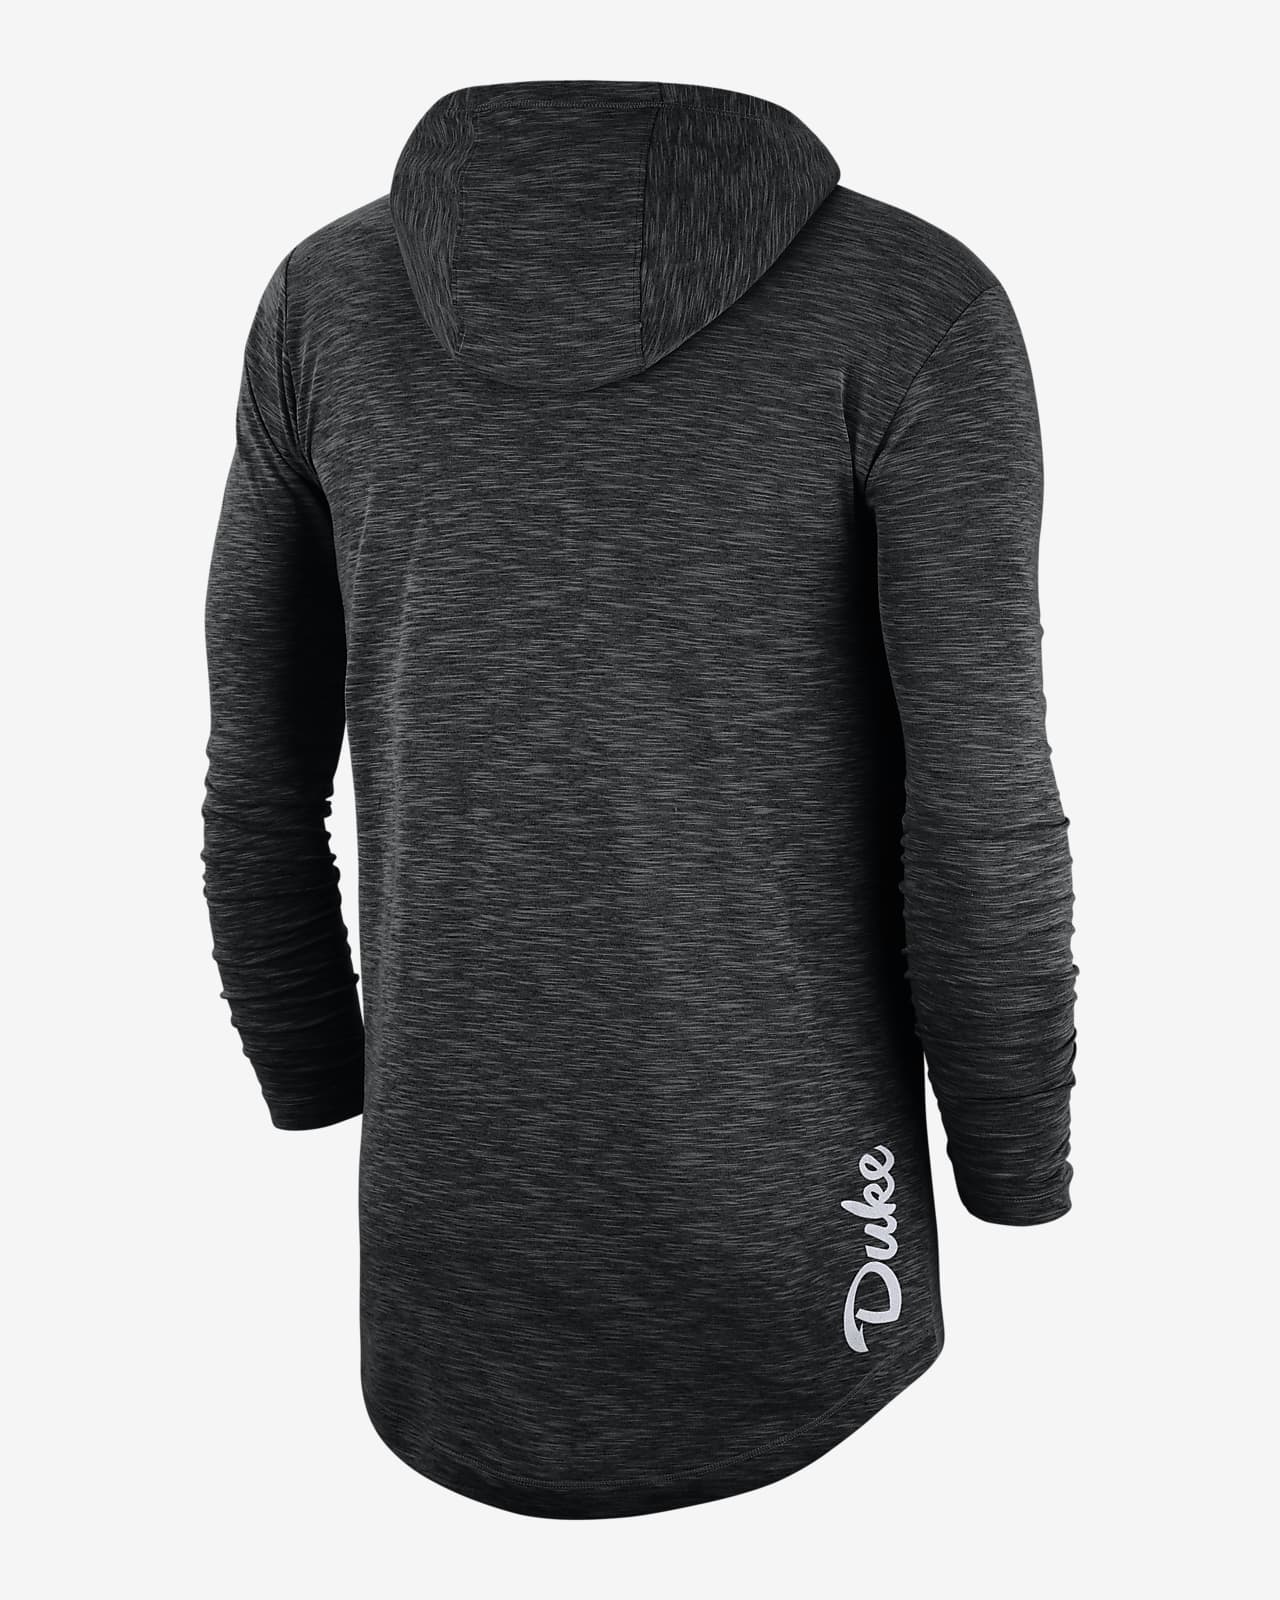 Buy > nike men's hyper dry hooded long sleeve shirt > in stock